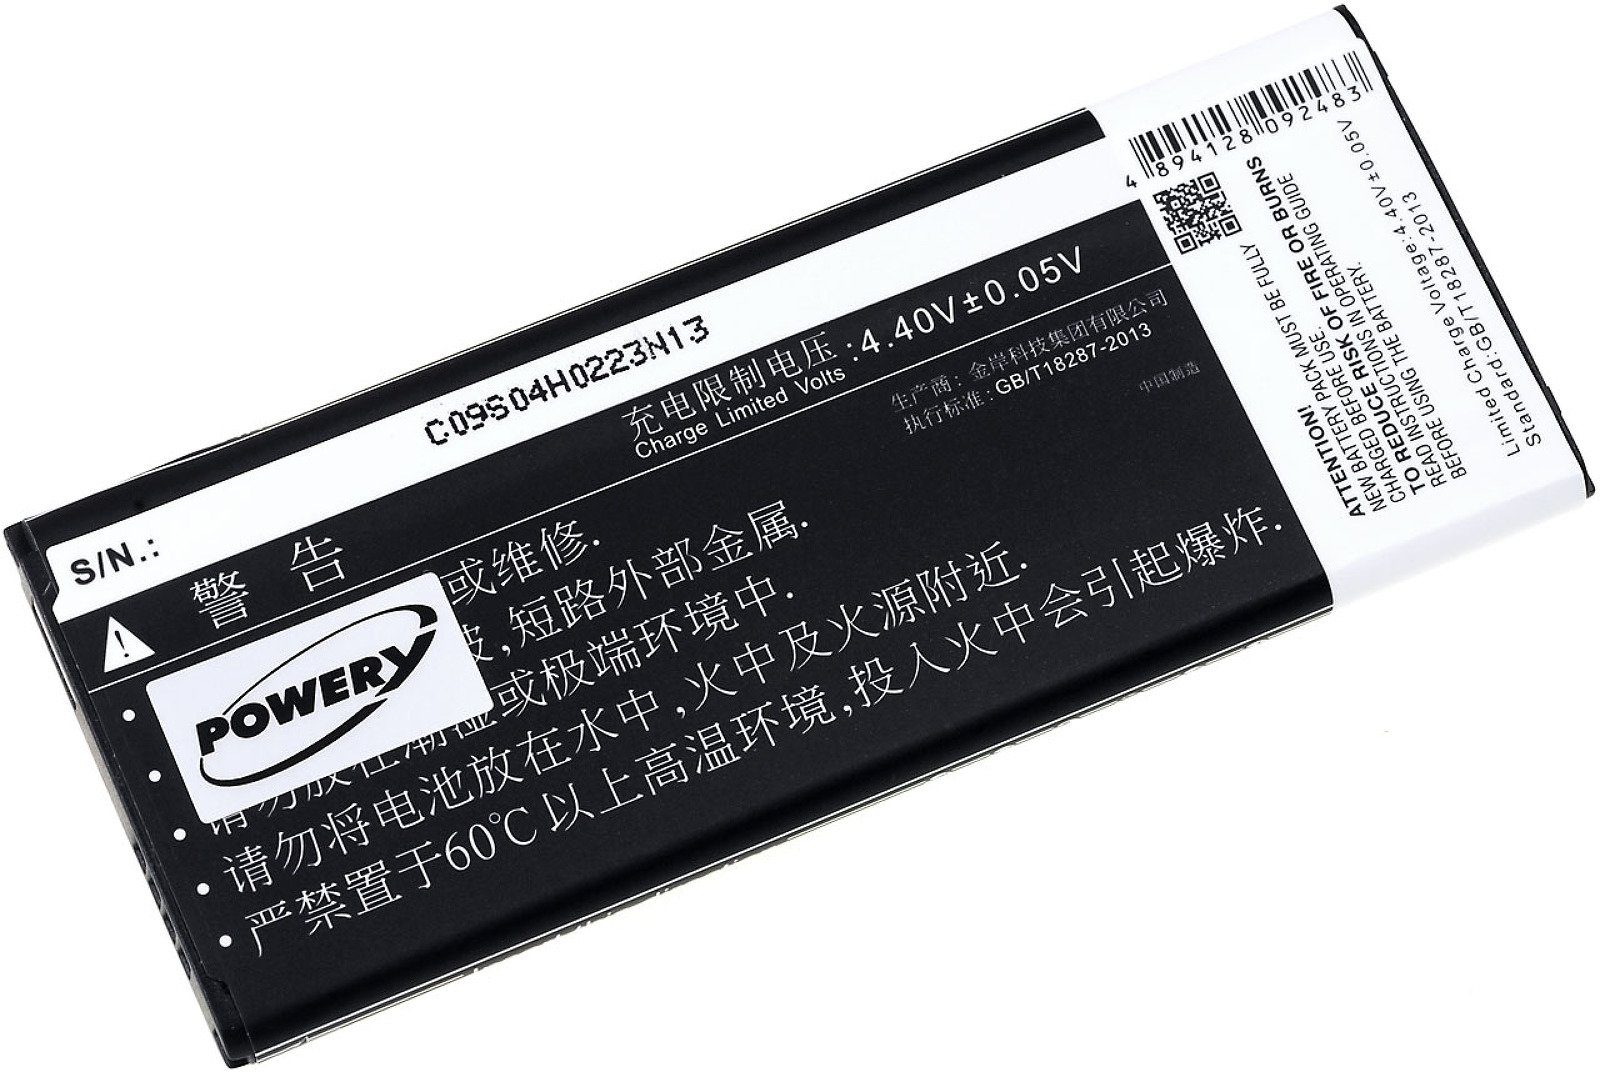 Powery Akku für Samsung Galaxy Note 4 (chinesisches Modell) mit NFC-Chip Smartphone-Akku 3000 mAh (3.85 V)